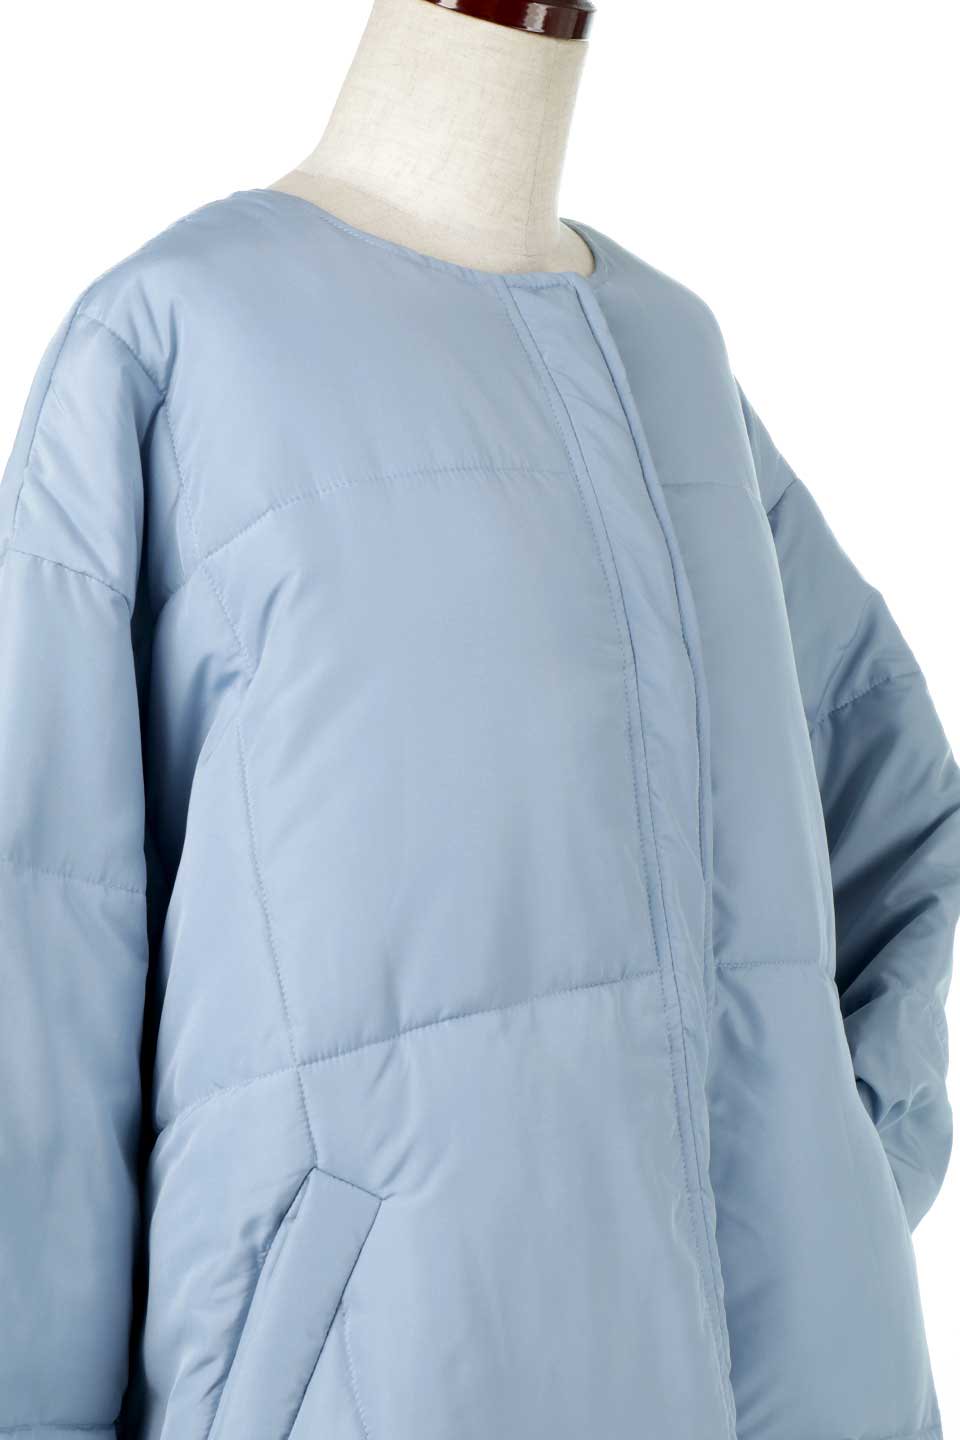 CollarlessOversizedInsulationJacketファイバーダウン・ノーカラージャケット大人カジュアルに最適な海外ファッションのothers（その他インポートアイテム）のアウターやコート。たっぷりシルエットのビッグダウンジャケット。ふんわり軽い中綿入りで風も寒さもシャットアウト。/main-15